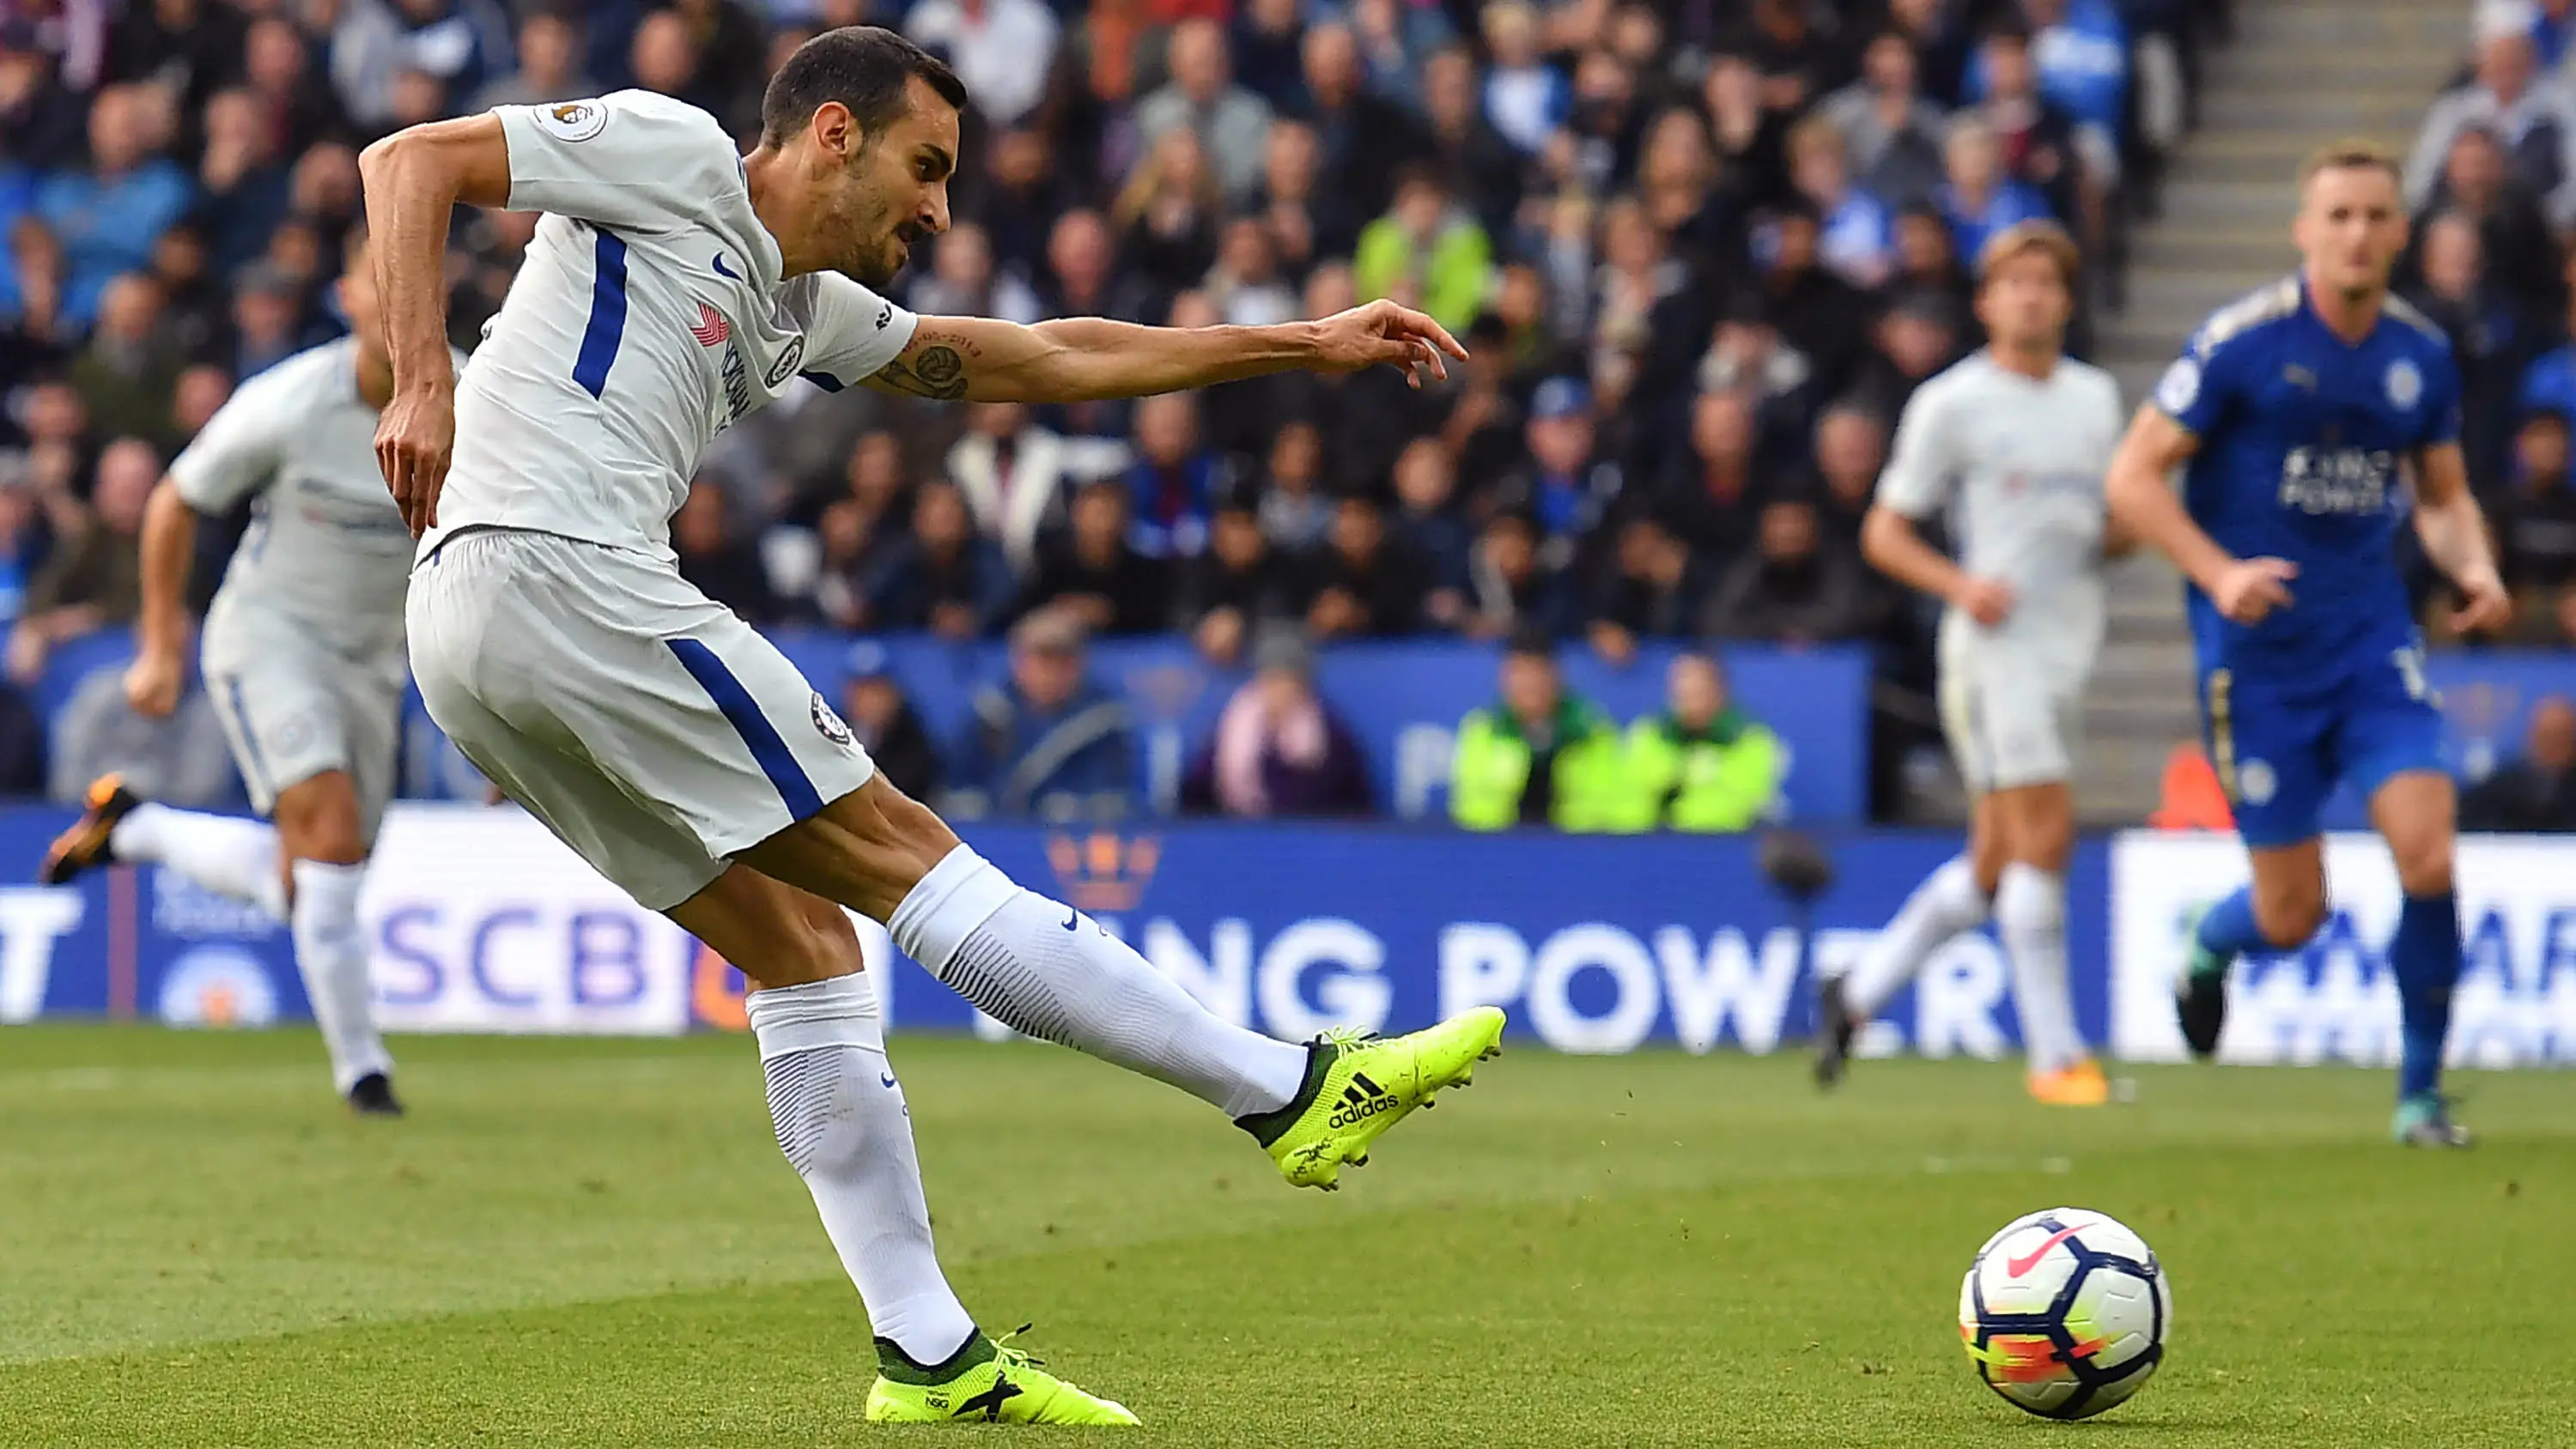 Bek Chelsea, Davide Zappacosta, melepaskan tendangan saat melawan Leicester pada laga Premier League di Stadion King Power, Leicester, Sabtu (9/9/2017) (AFP/Ben Stansall)